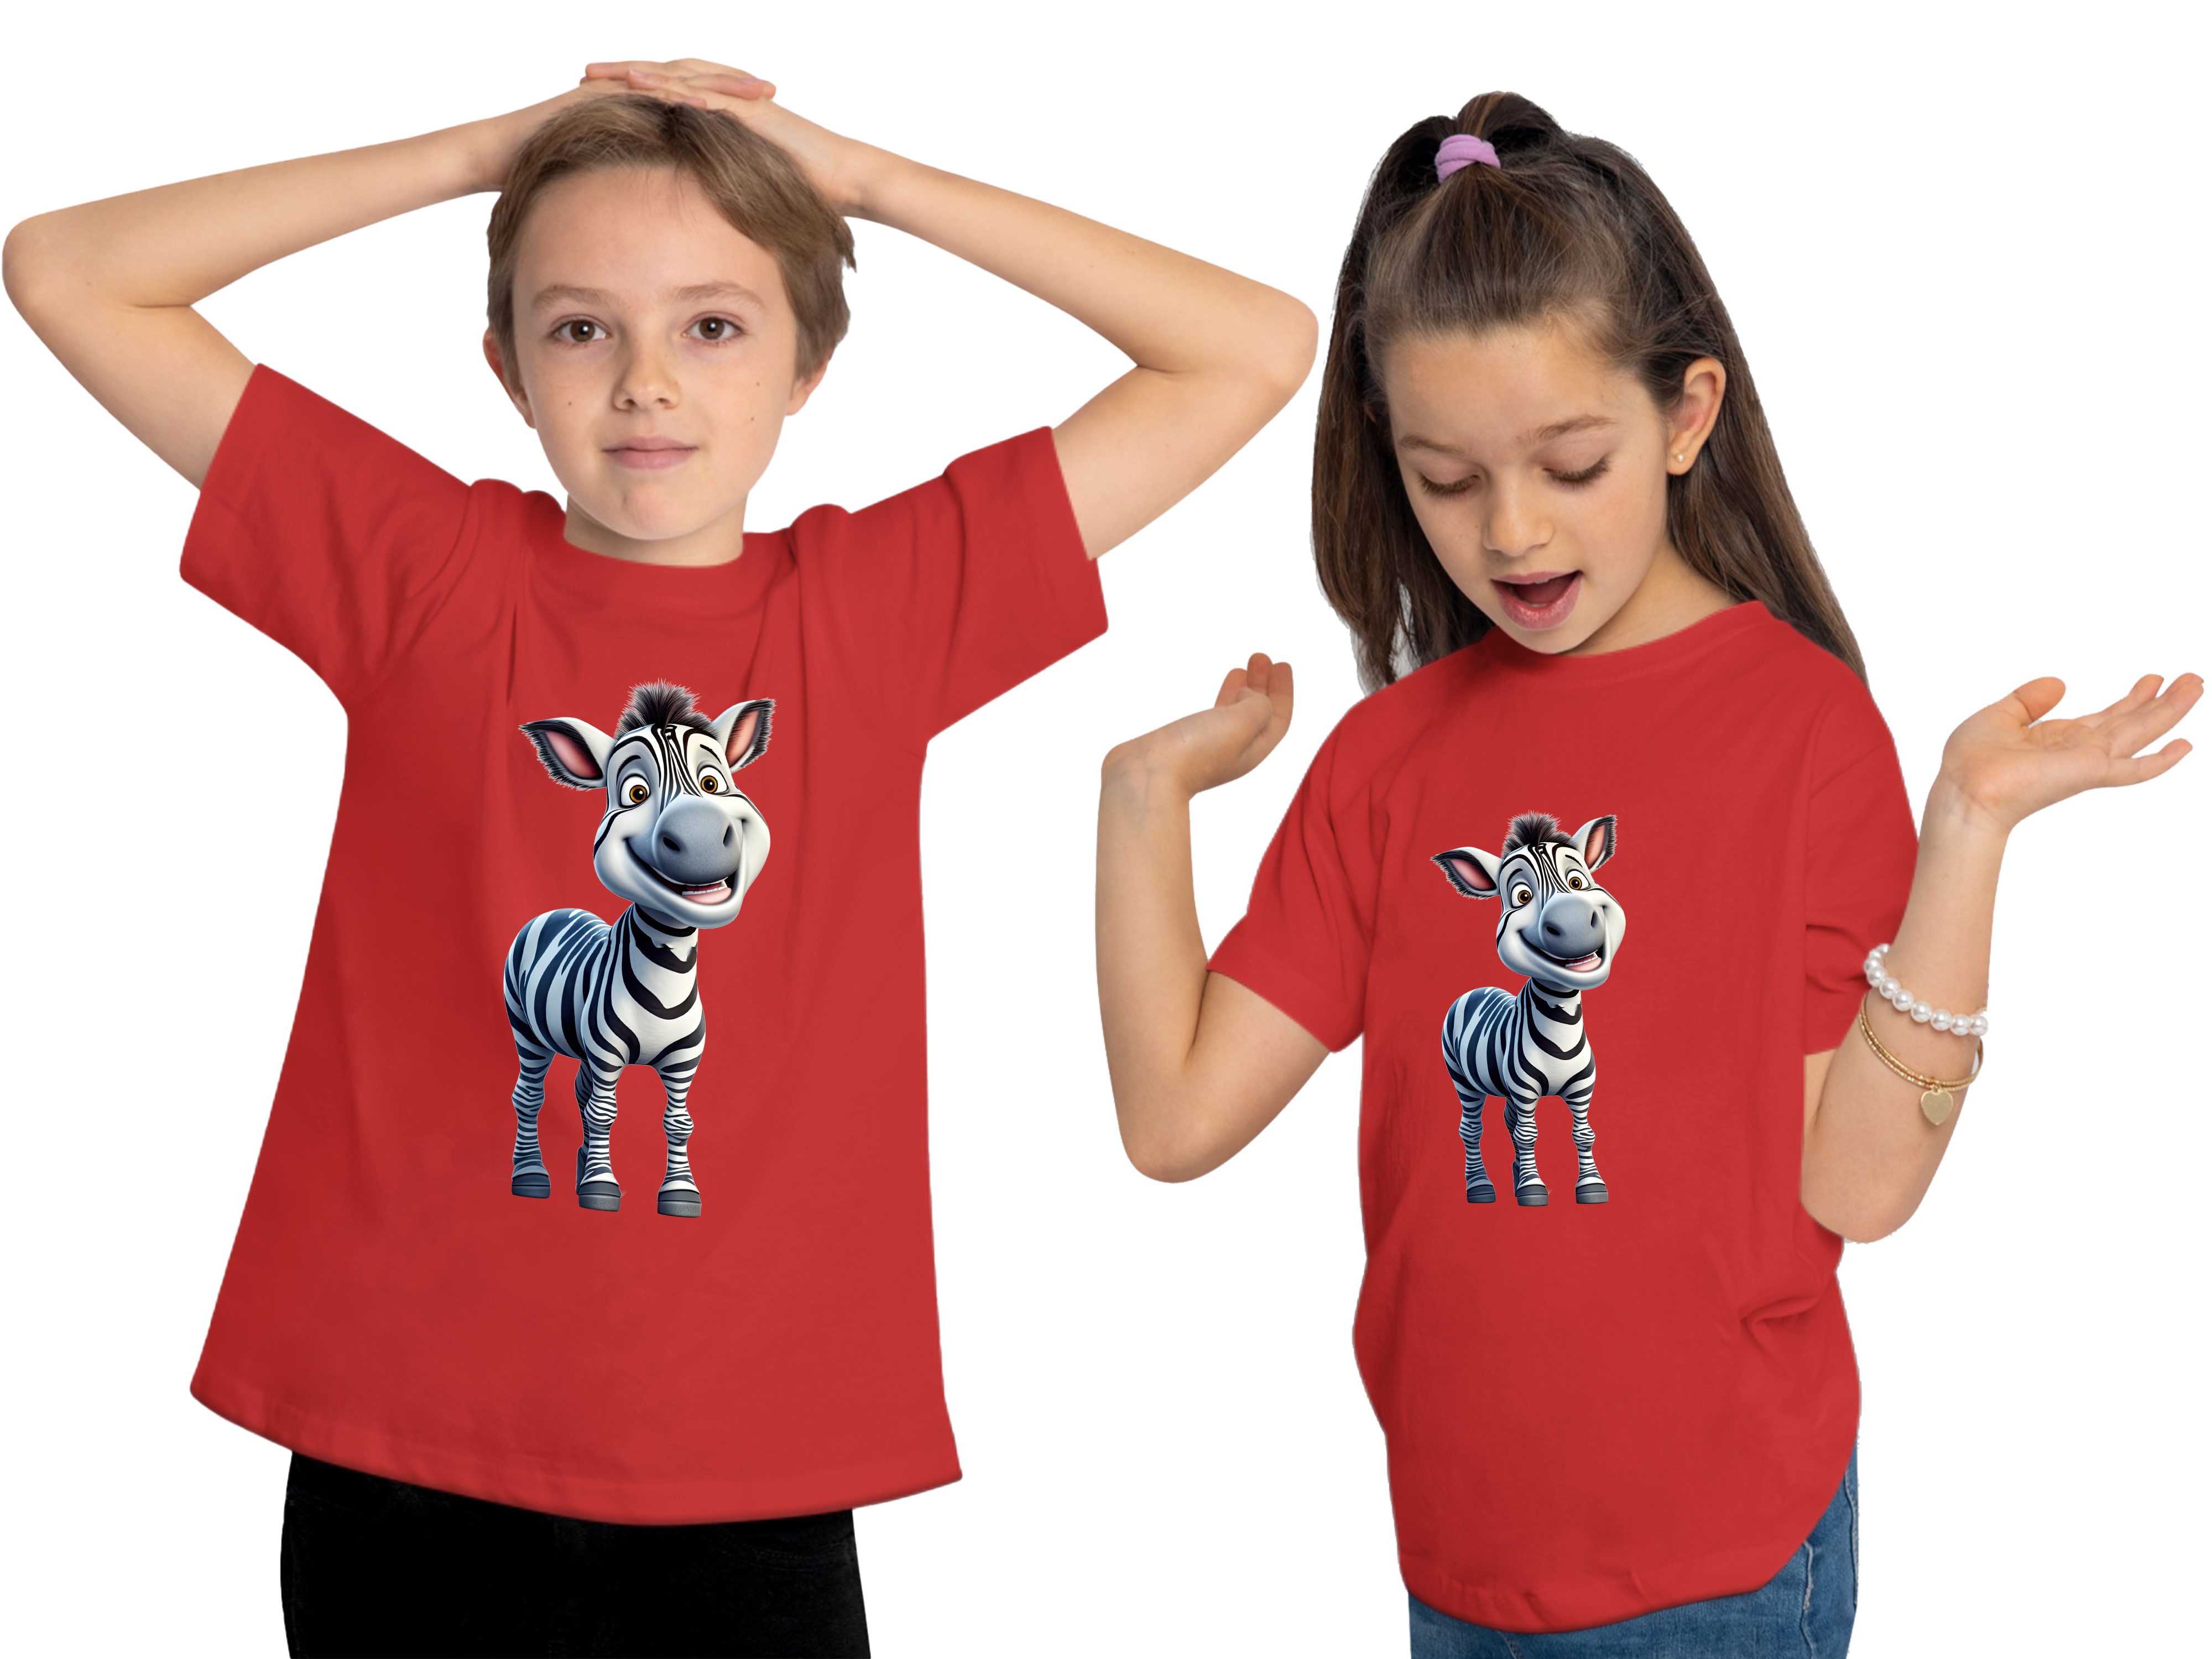 Kinder Print T-Shirt Zebra bedruckt - Shirt Wildtier MyDesign24 rot Aufdruck, Baby i280 Baumwollshirt mit